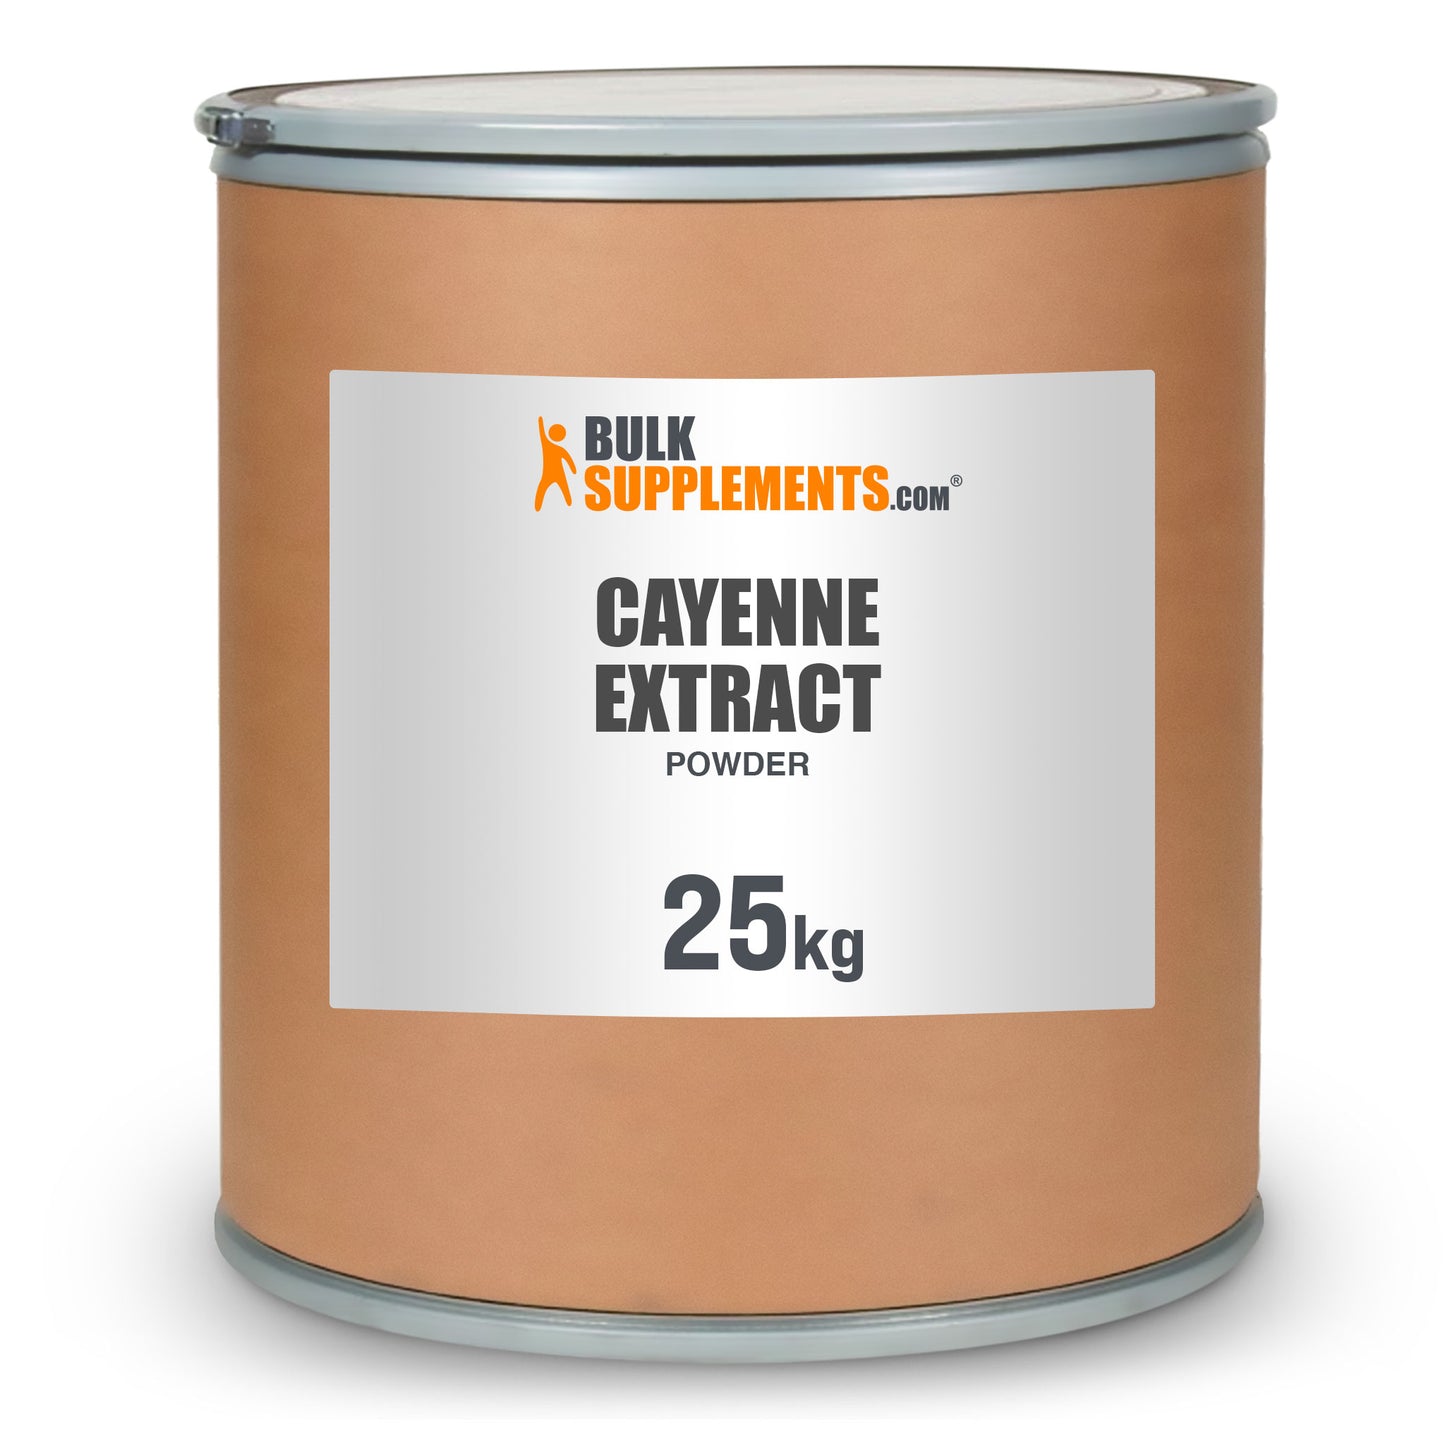 Cayenne Extract powder 25kg barrel